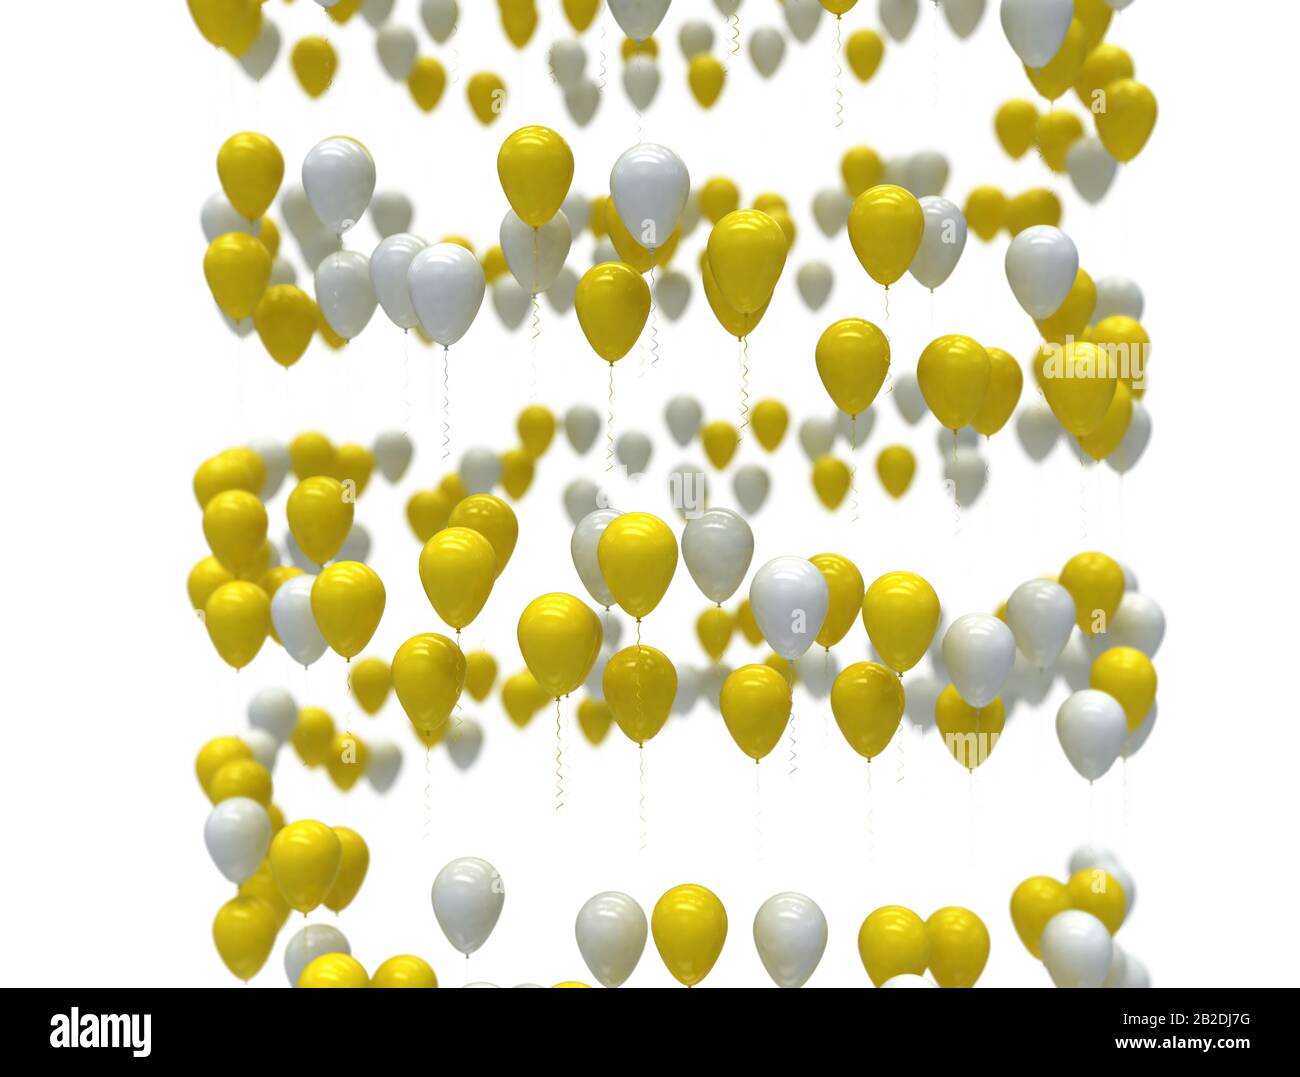 Weiße und gelbe Festballons in Spiralform, isoliert auf weißem Hintergrund. 3D-Rendering Stockfoto